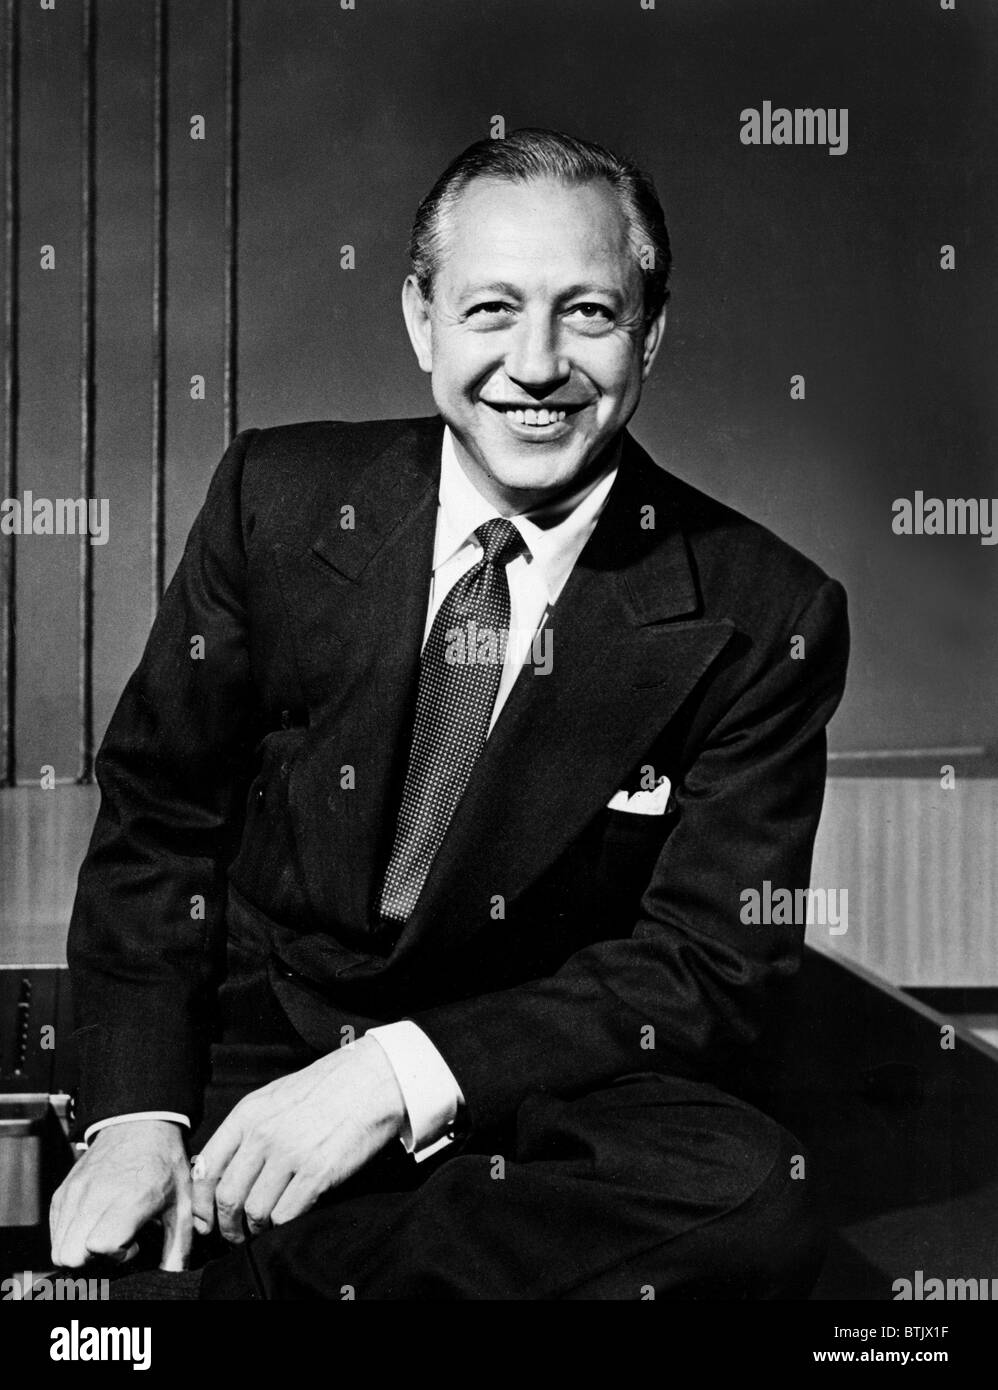 WILLIAM S. Paley, fondateur de CBS, photo datée du 15/04/50. Banque D'Images